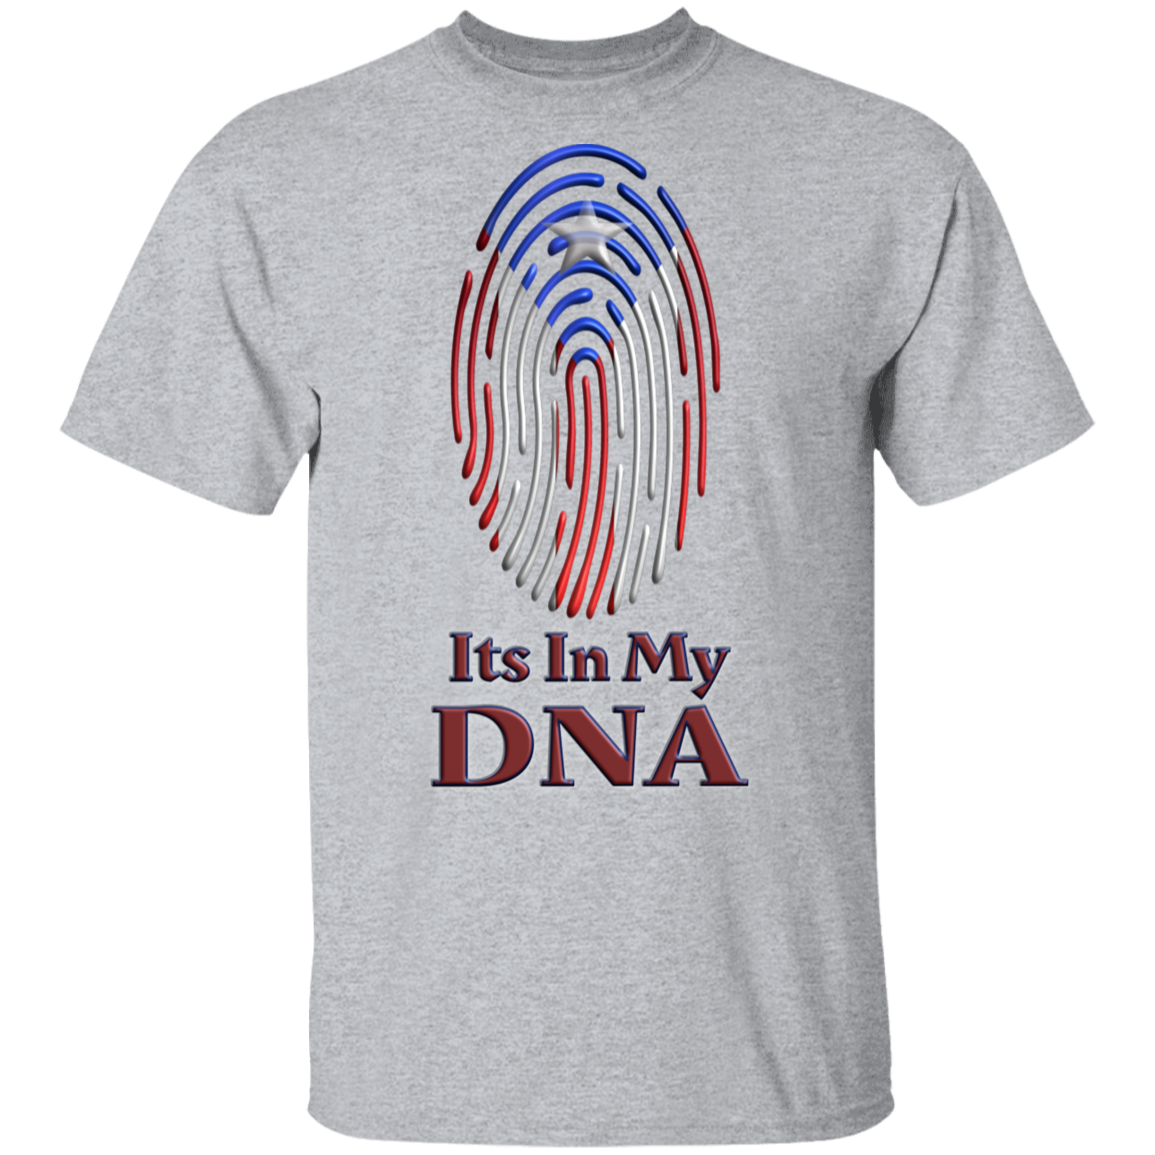 DNA 5.3 oz. T-Shirt